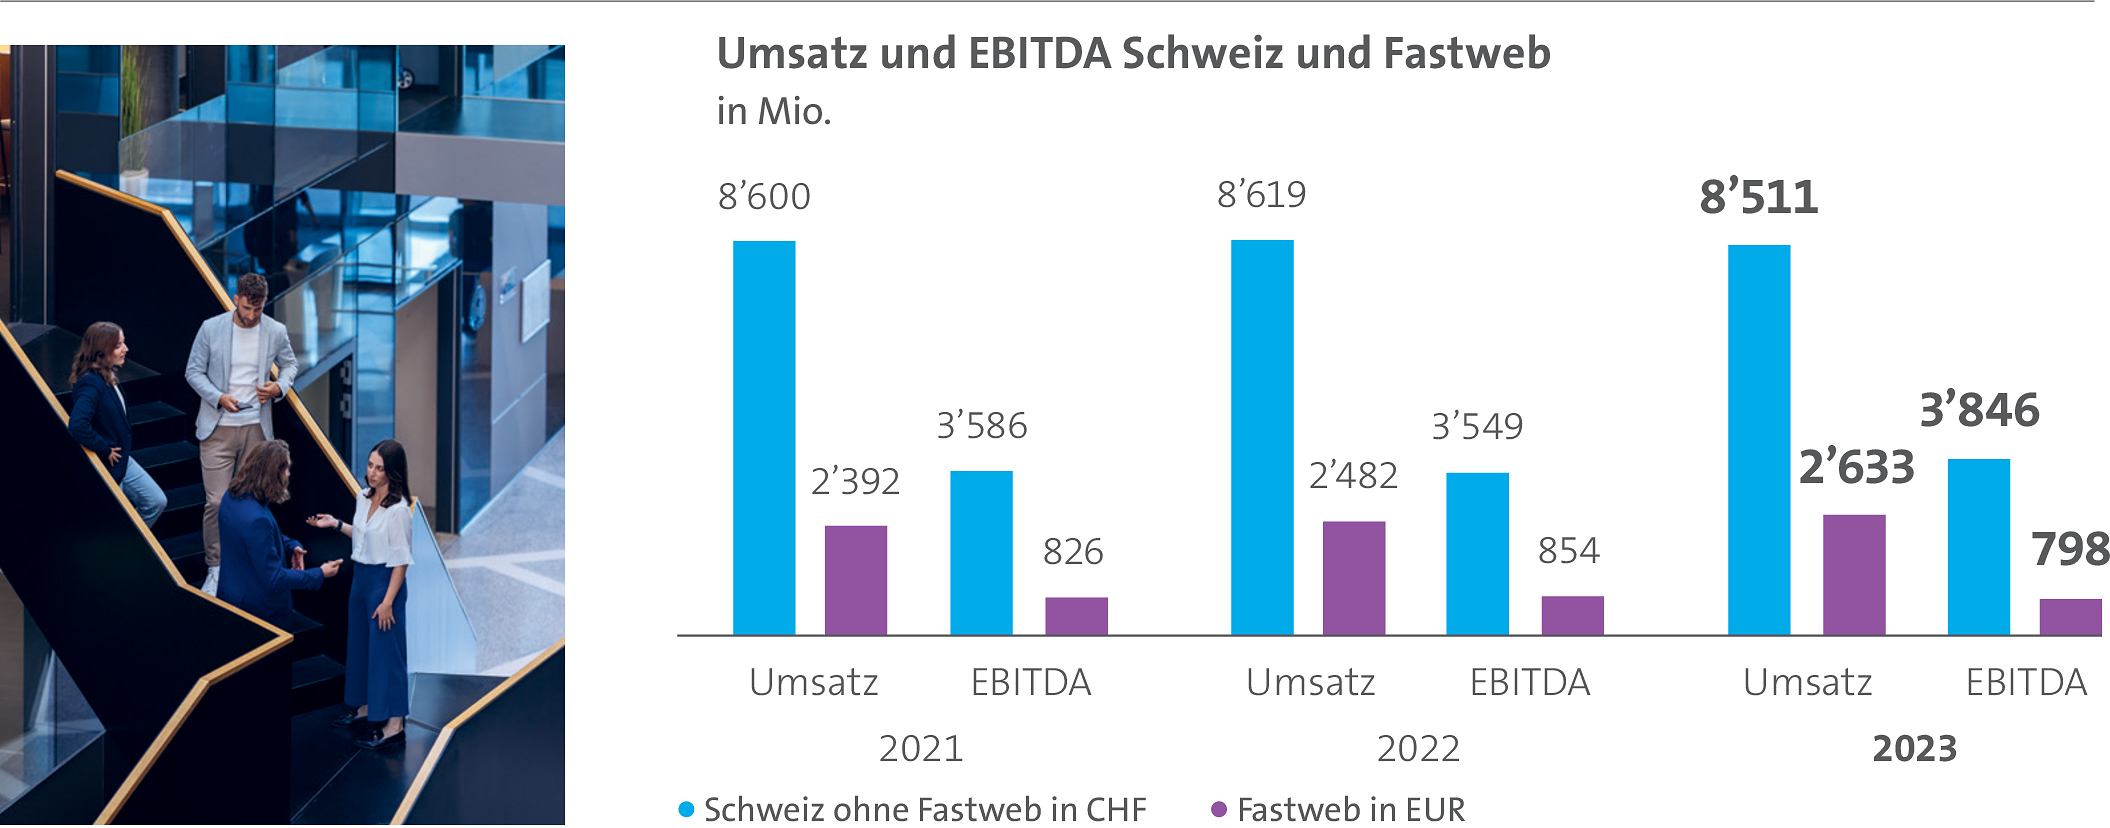 Das Säulendiagramm stellt den Umsatz und das EBITDA der Schweiz und Fastweb über die letzten drei Jahre dar.